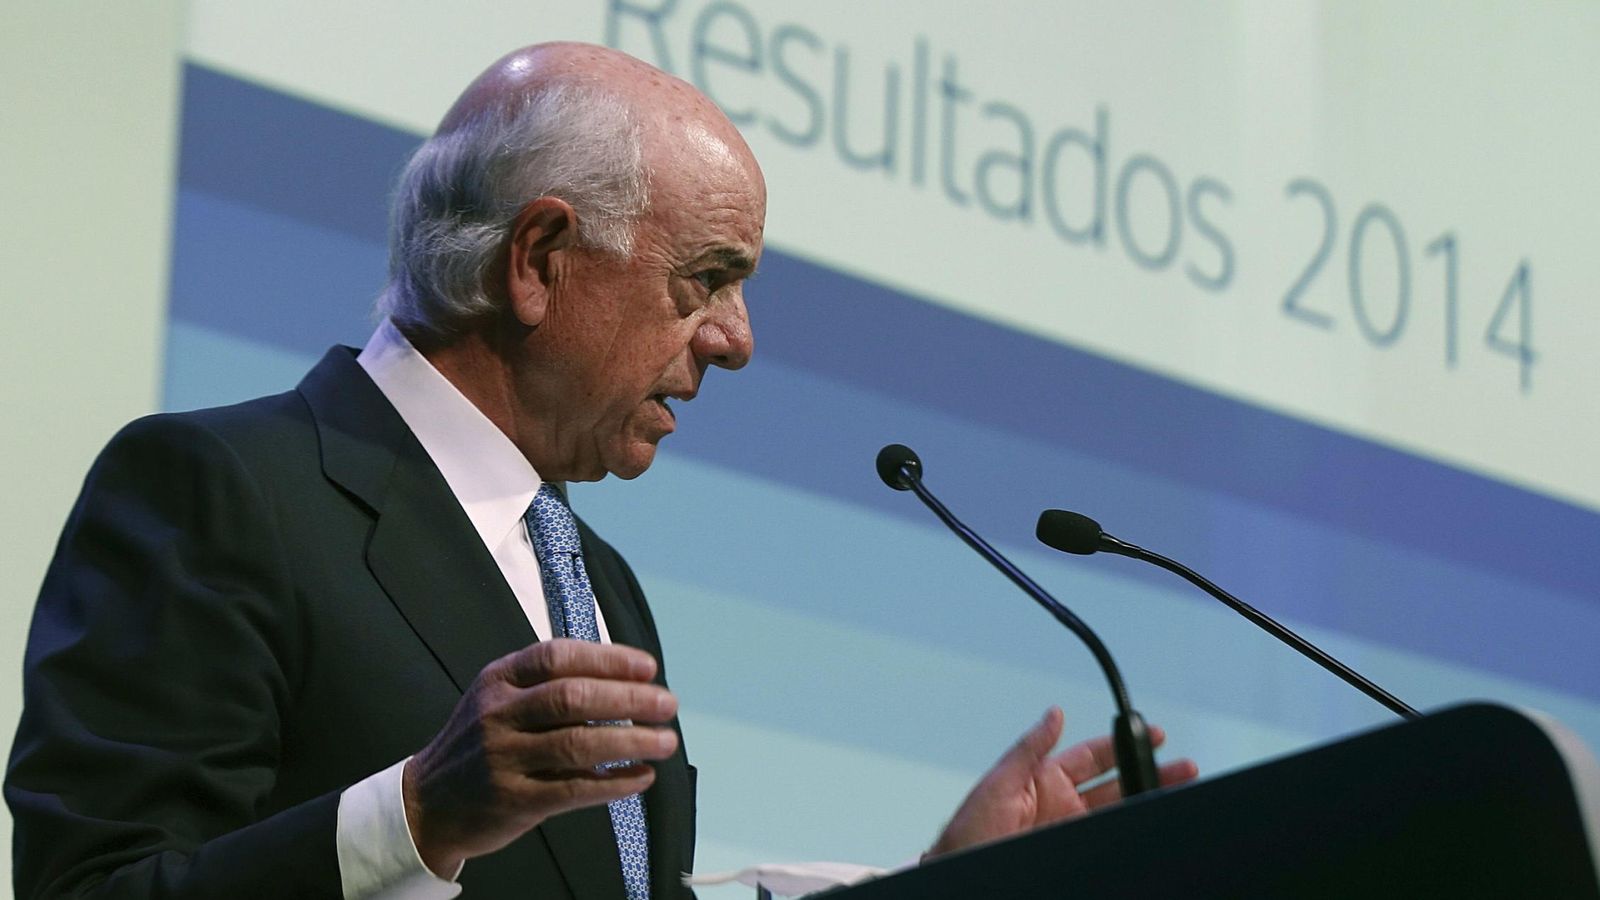 Foto: El presidente de BBVA, Francisco González. (EFE)